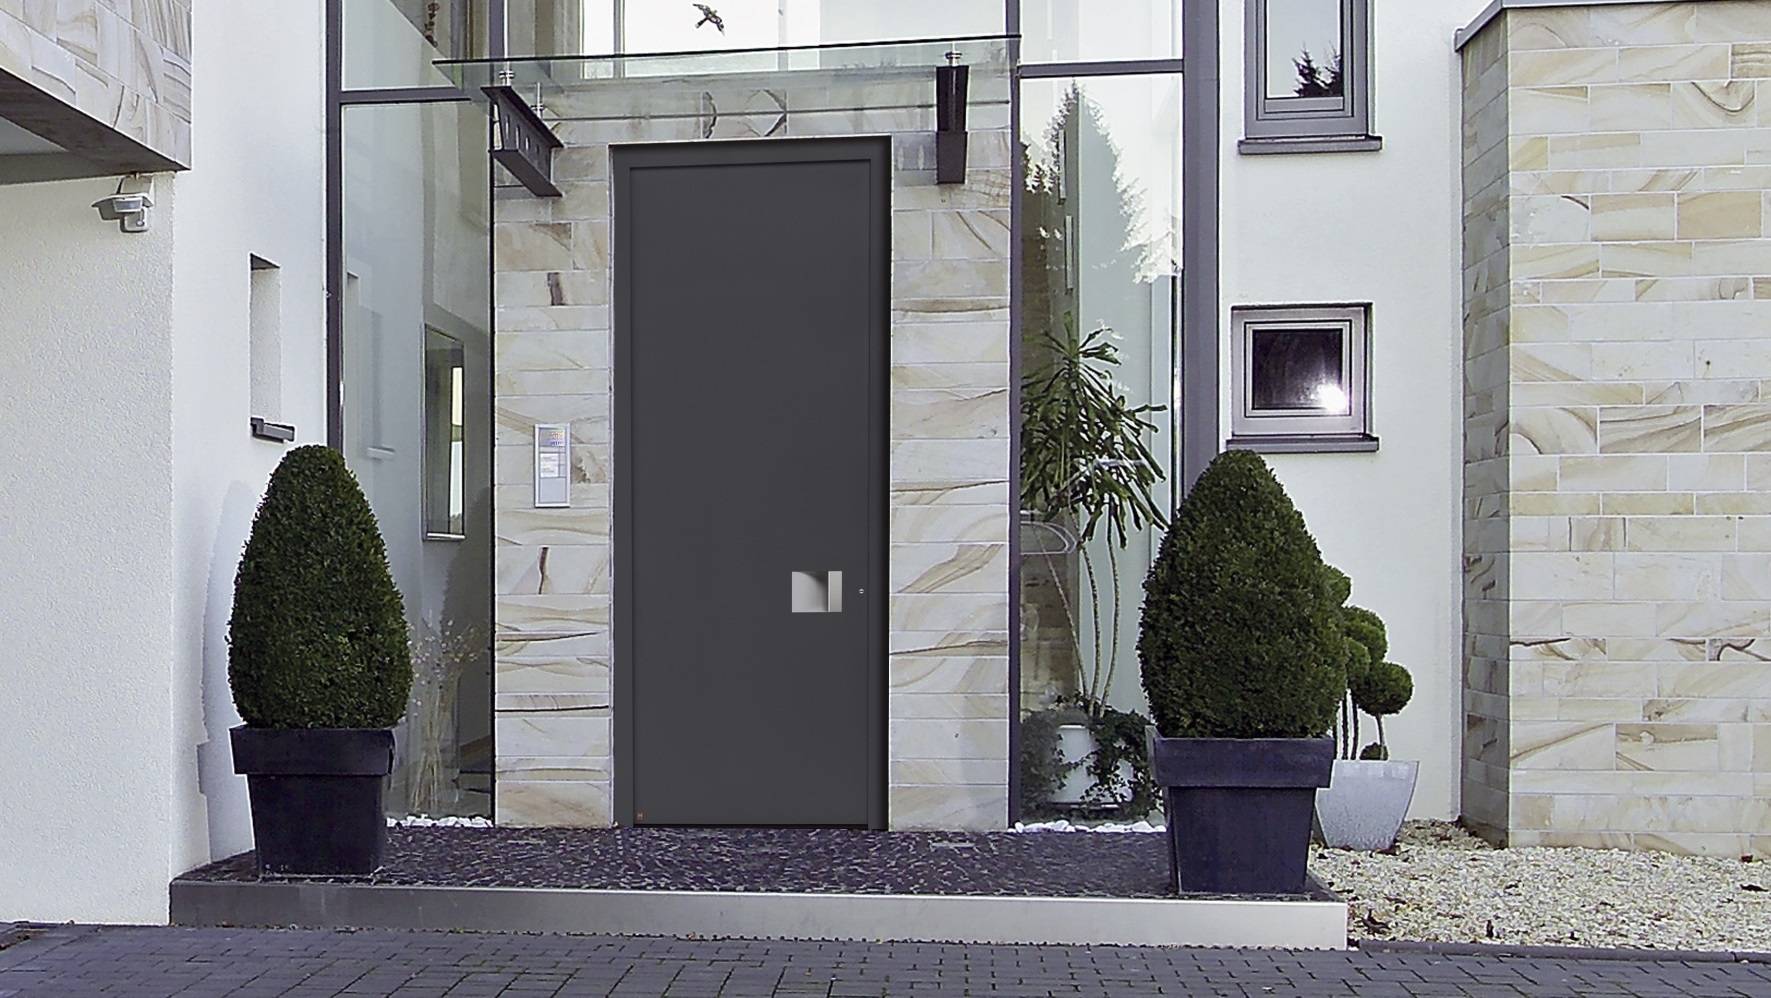 Алюминиевые двери (60 фото): входные глухие изделия и со стеклом из профиля, теплые системы для частного дома, особенности конструкции